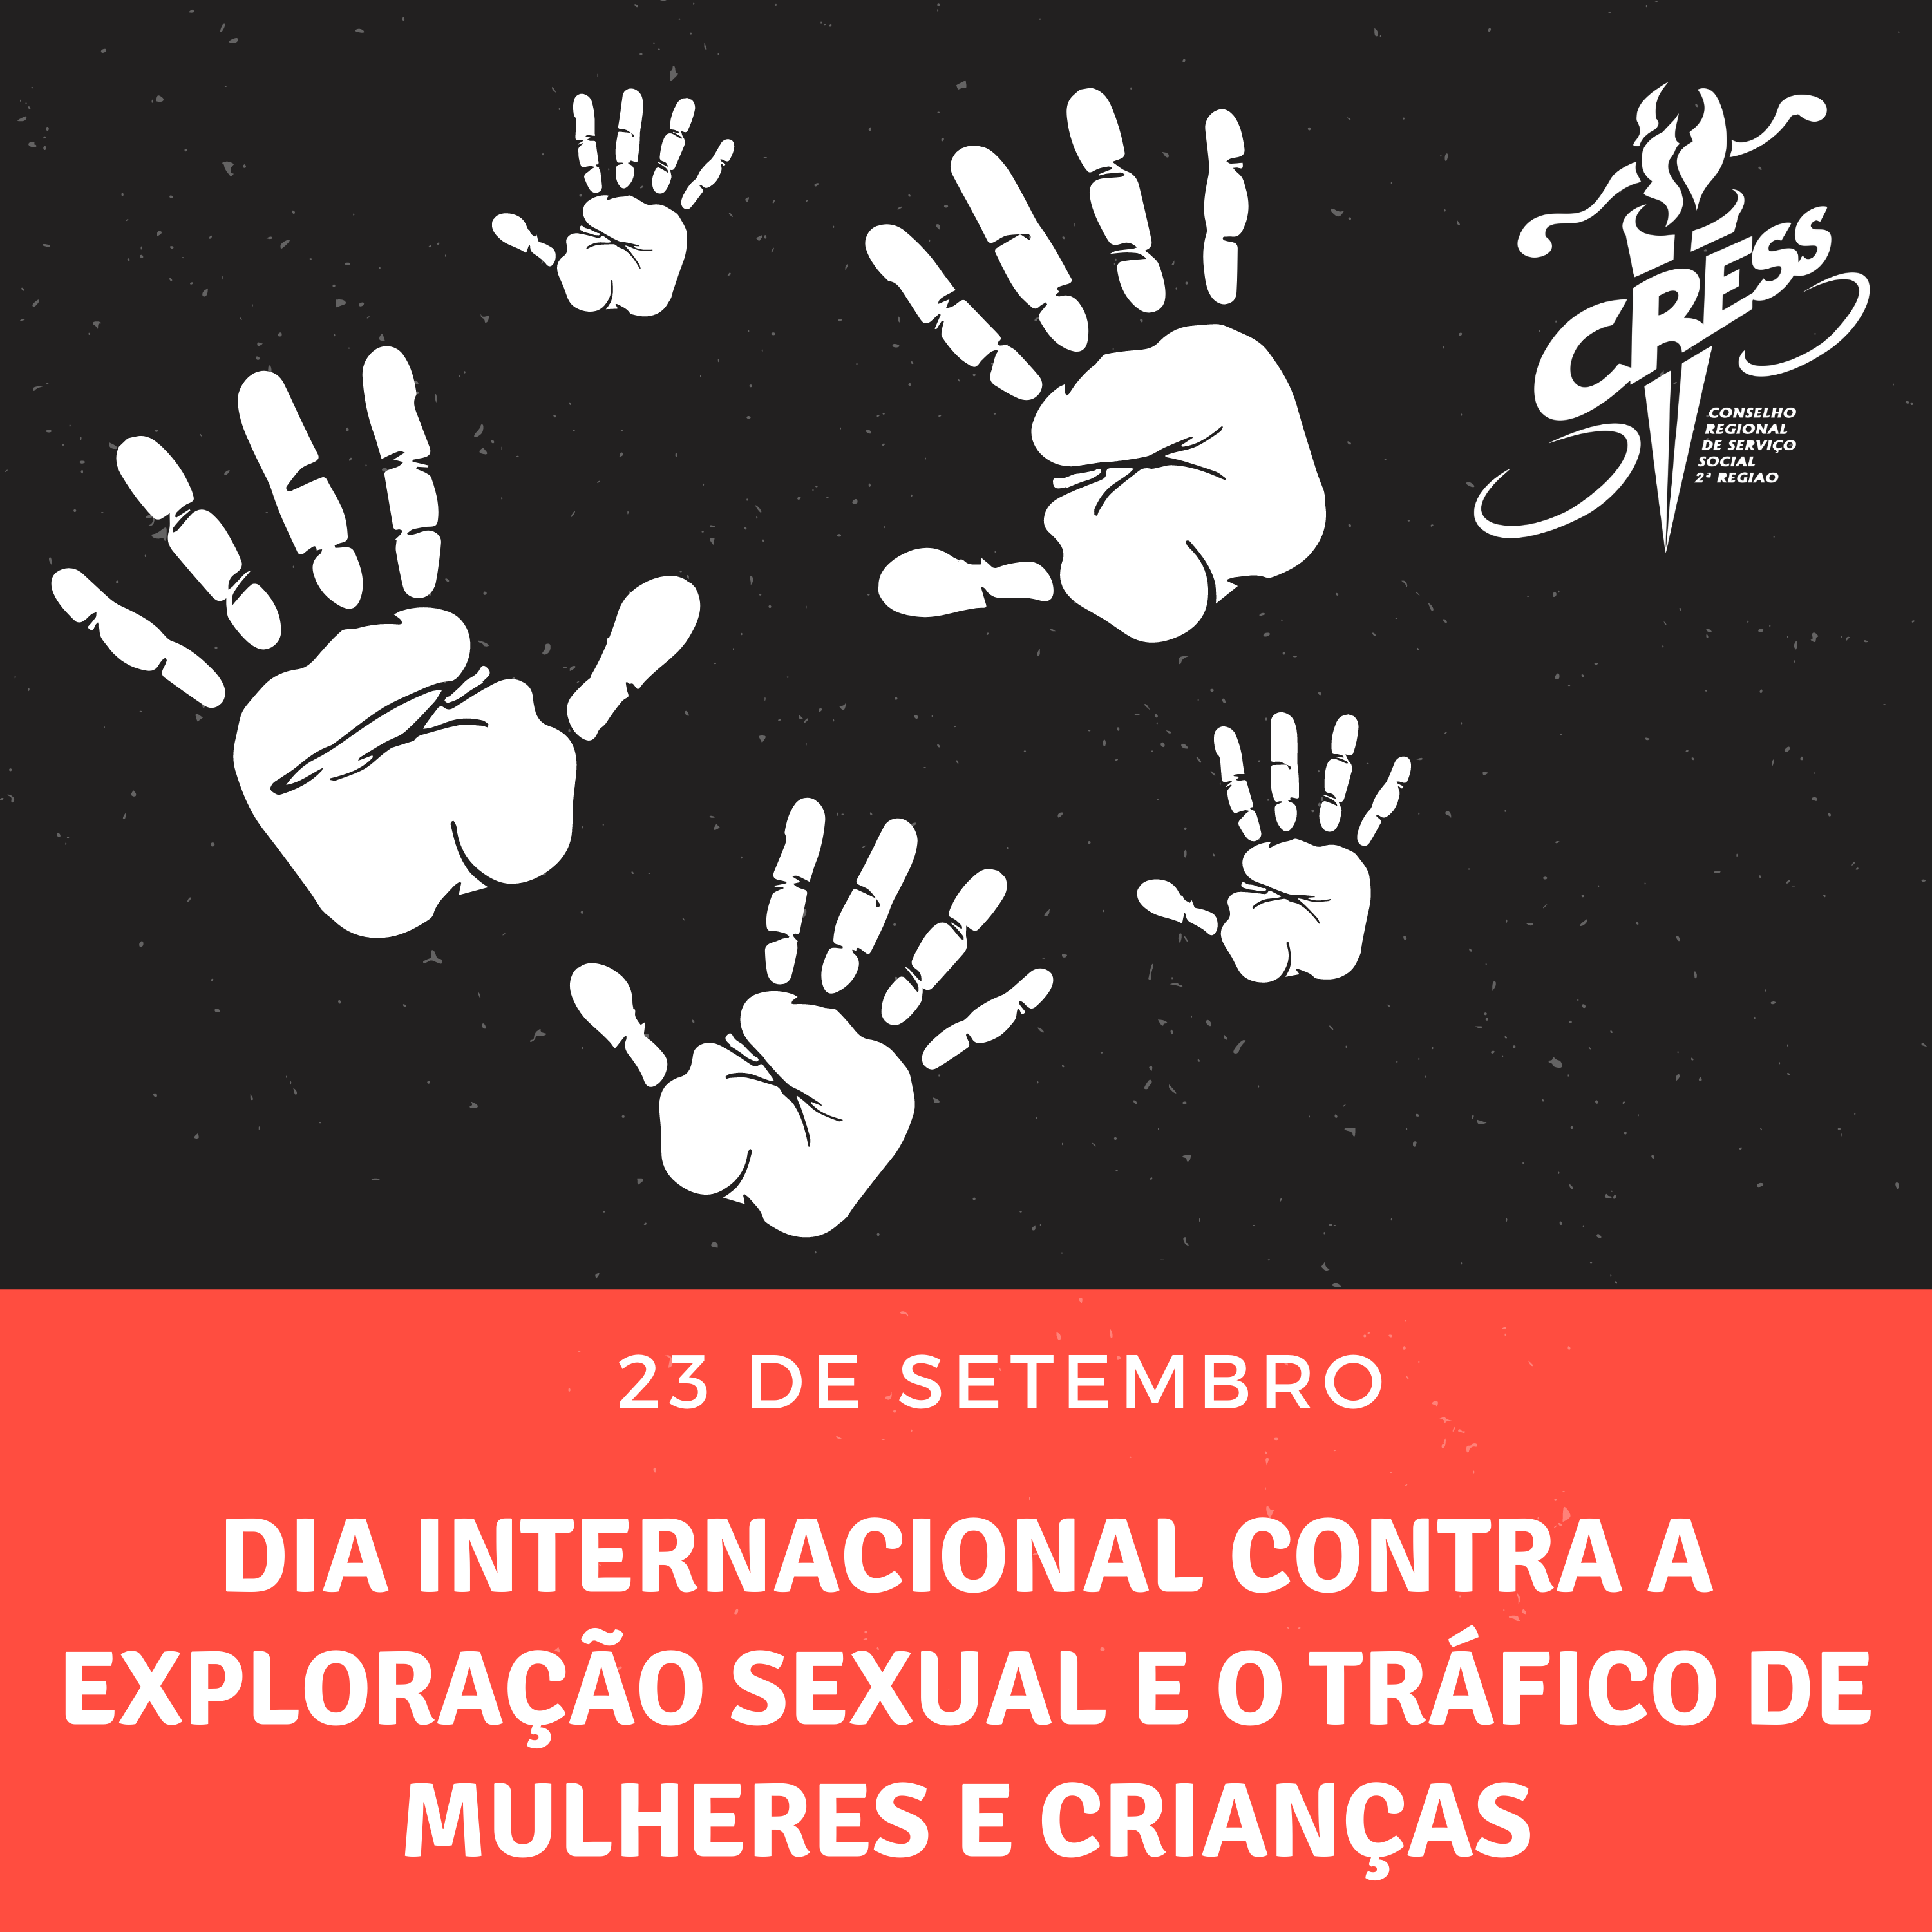 Dia Internacional contra a Exploração Sexual e o Tráfico de Mulheres e Crianças – 23 de setembro